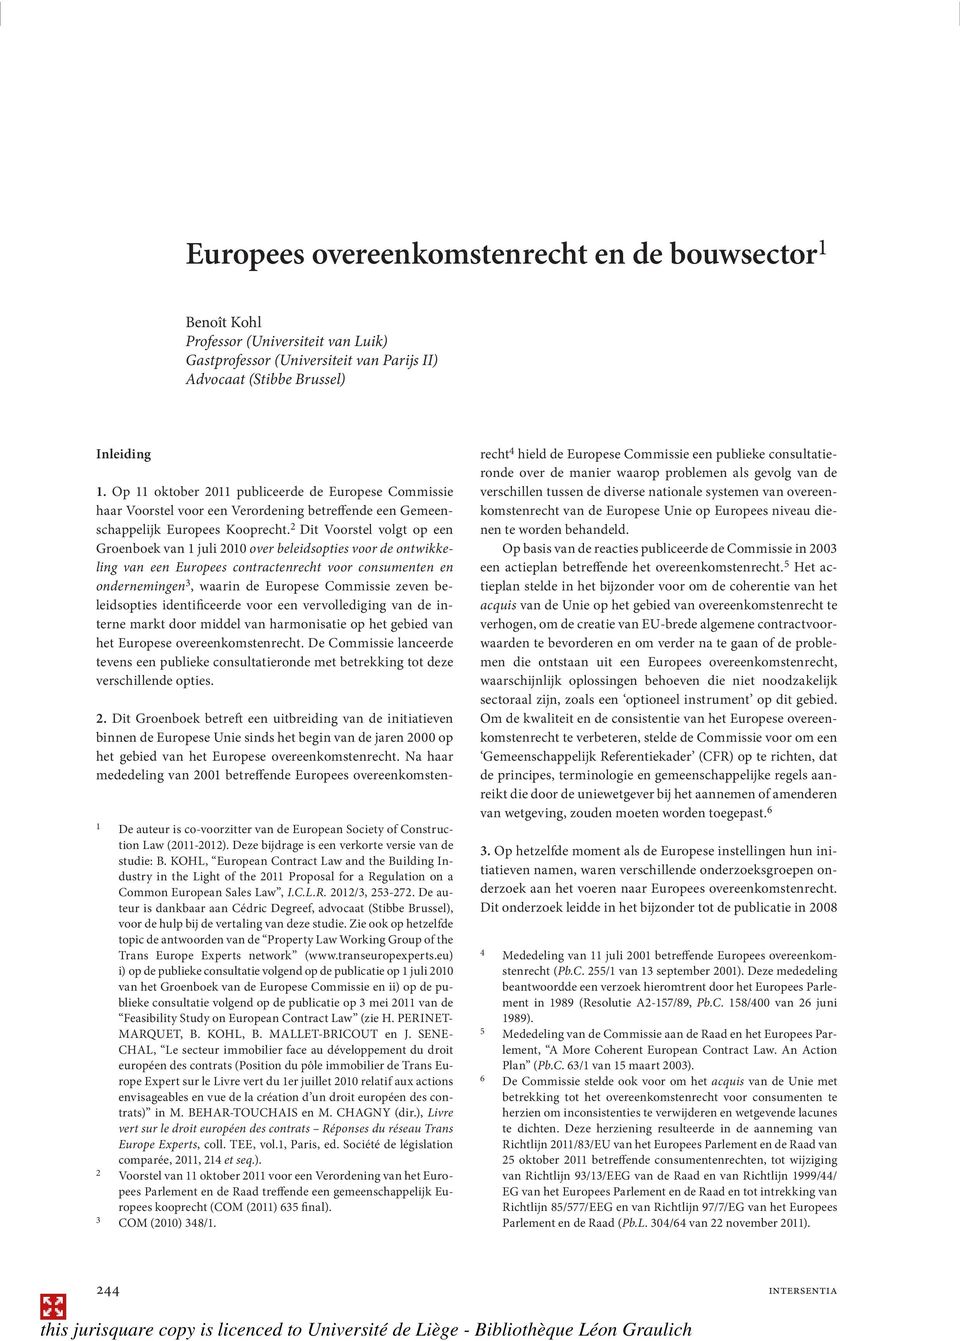 2 Dit Voorstel volgt op een Groenboek van 1 juli 2010 over beleidsopties voor de ontwikkeling van een Europees contractenrecht voor consumenten en ondernemingen 3, waarin de Europese Commissie zeven